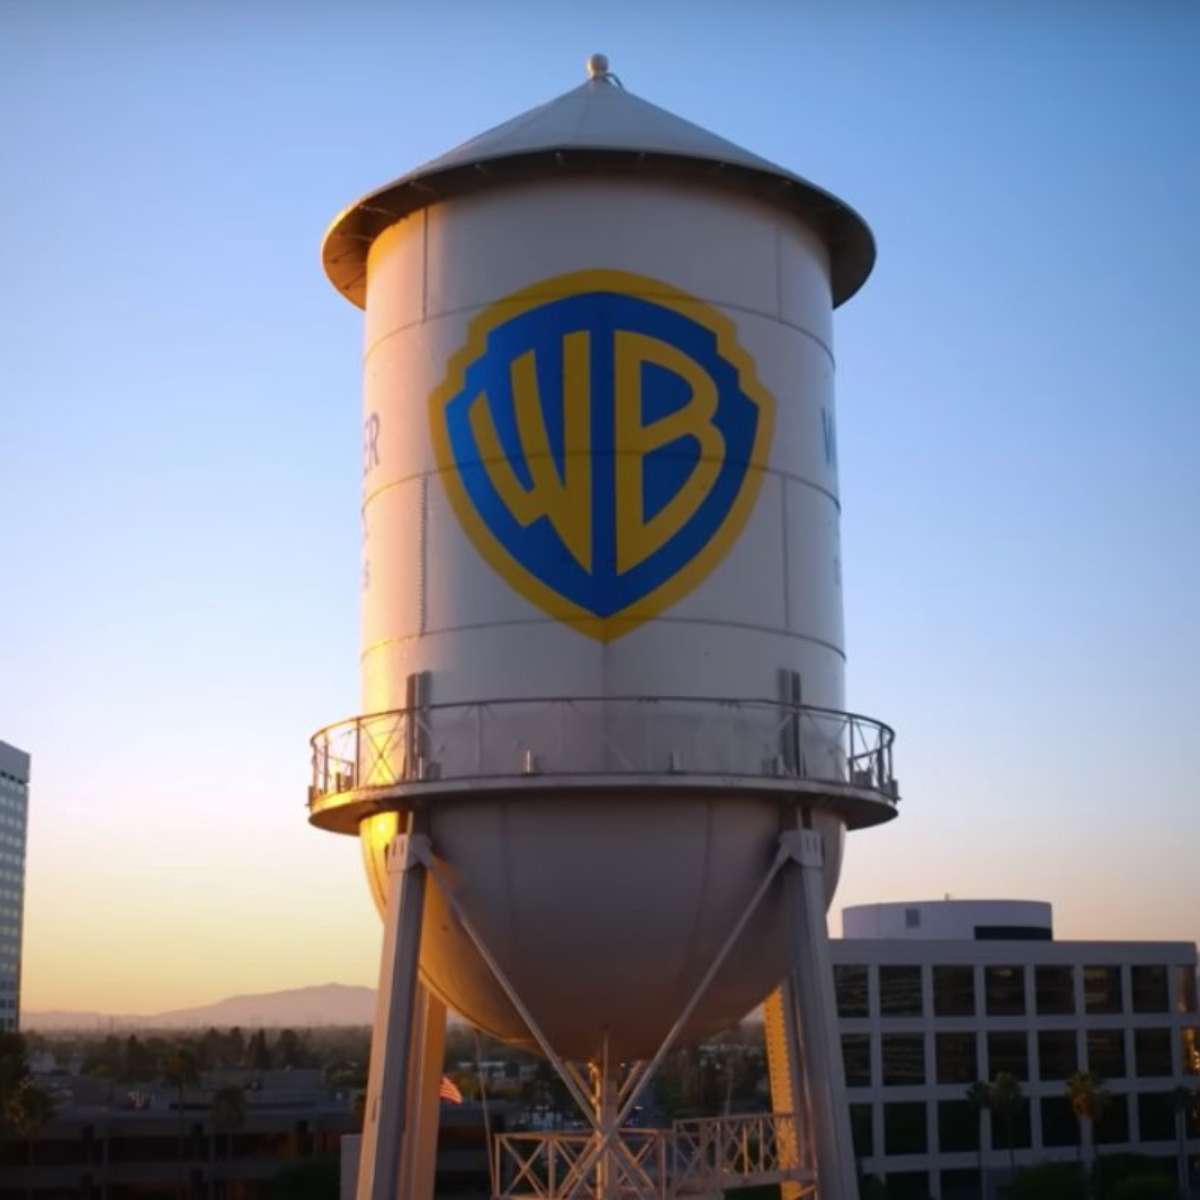 Warner Bros. Discovery comemora os 100 anos de histórias da Warner Bros.  com uma deslumbrante variedade de produtos, conteúdo e experiências do  centenário - EP GRUPO